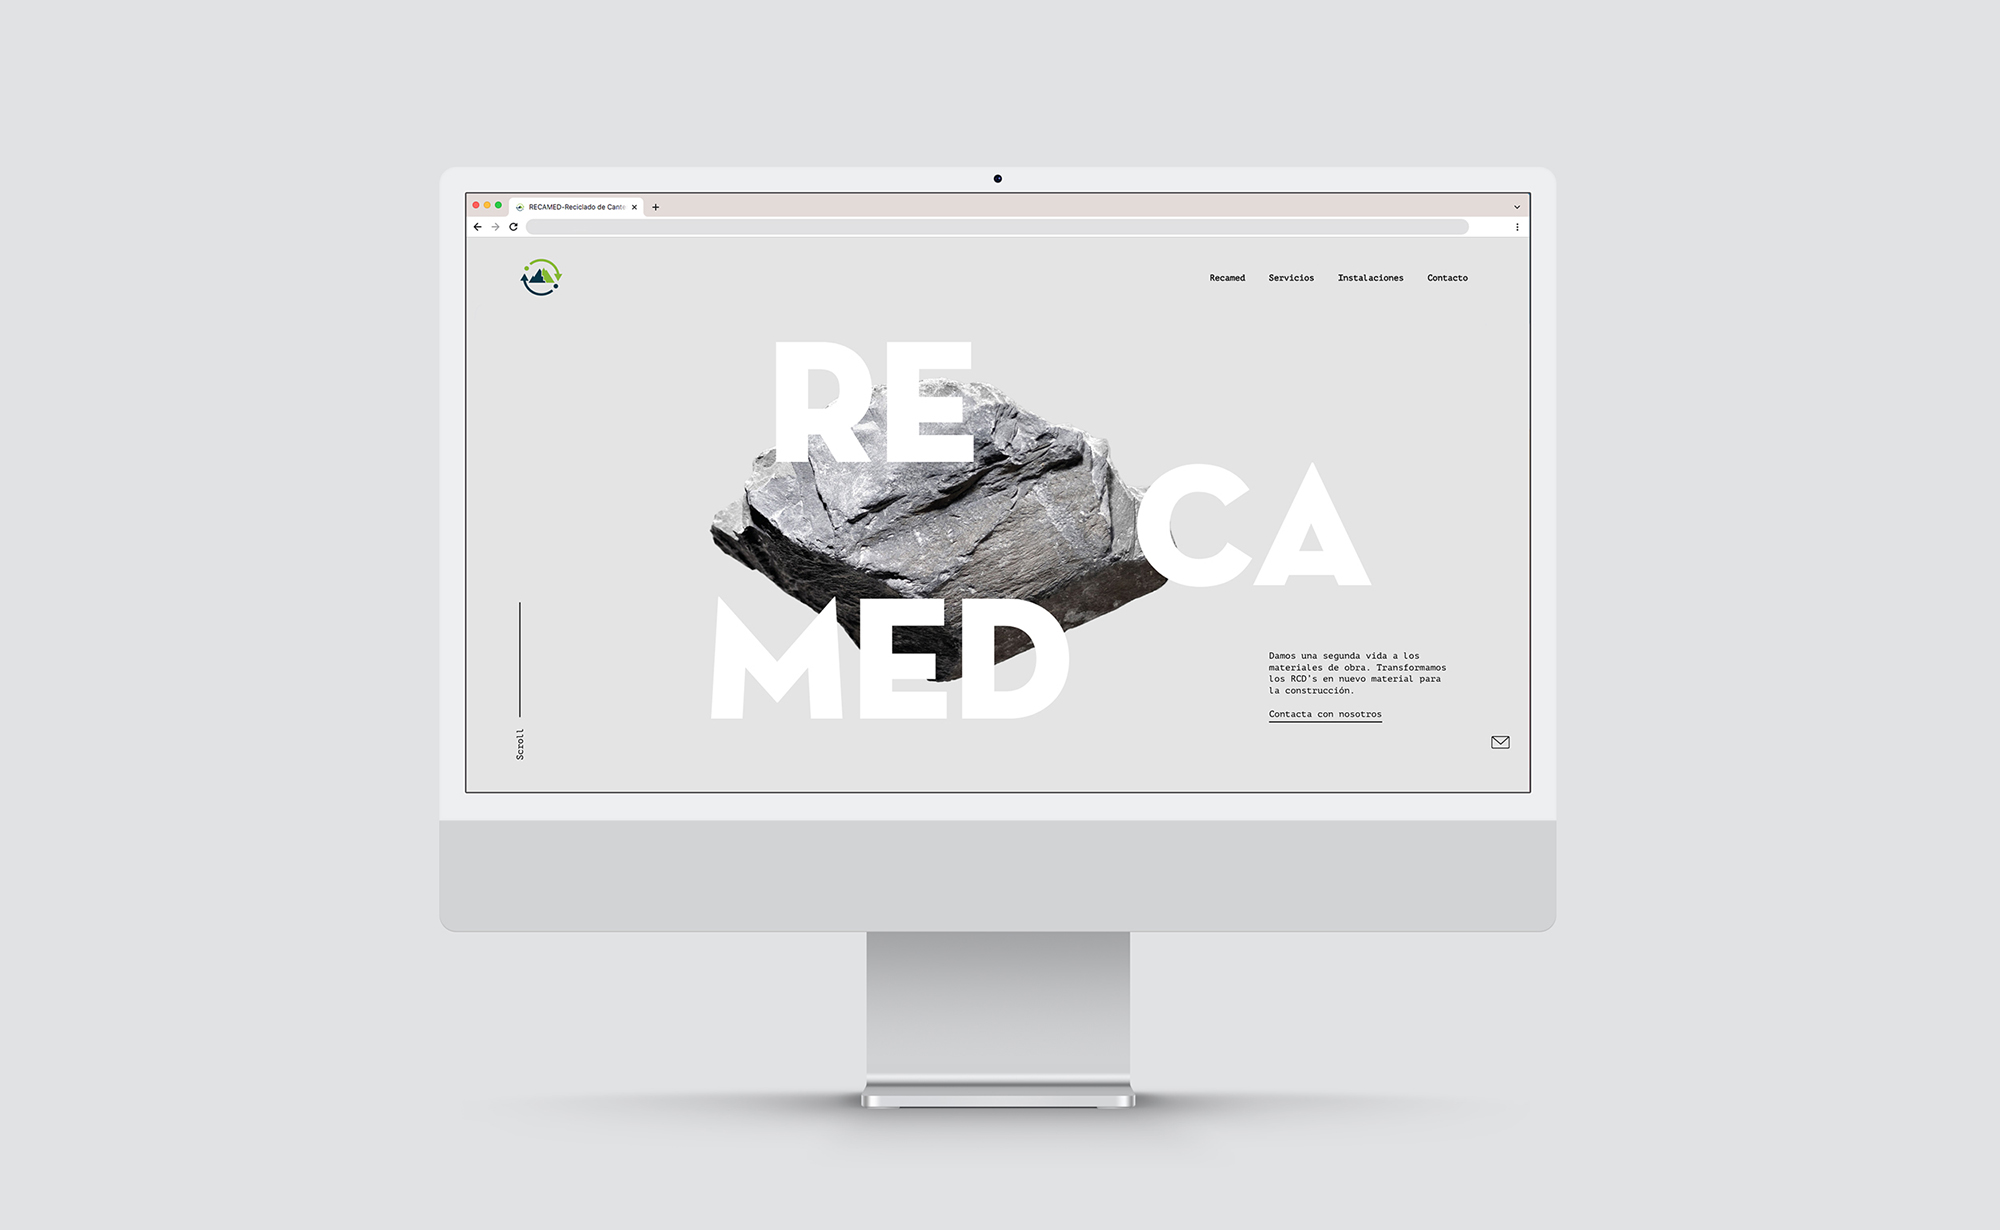 Diseño y desarrollo de website corporativo para Recamed. Vista layout iMac.